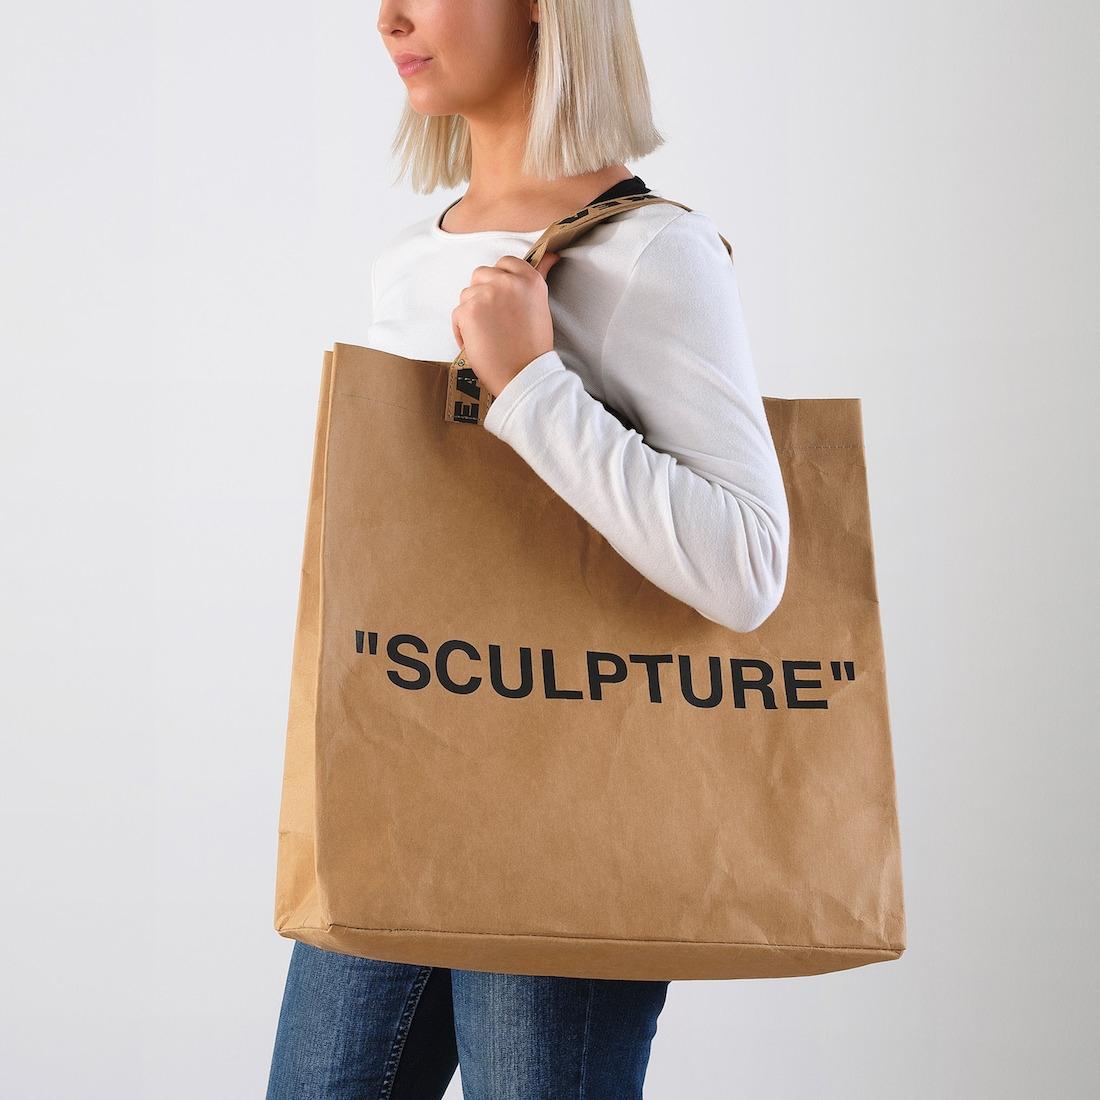 Shopping bag - Collezione Markerad by Ikea e Virgil Abloh